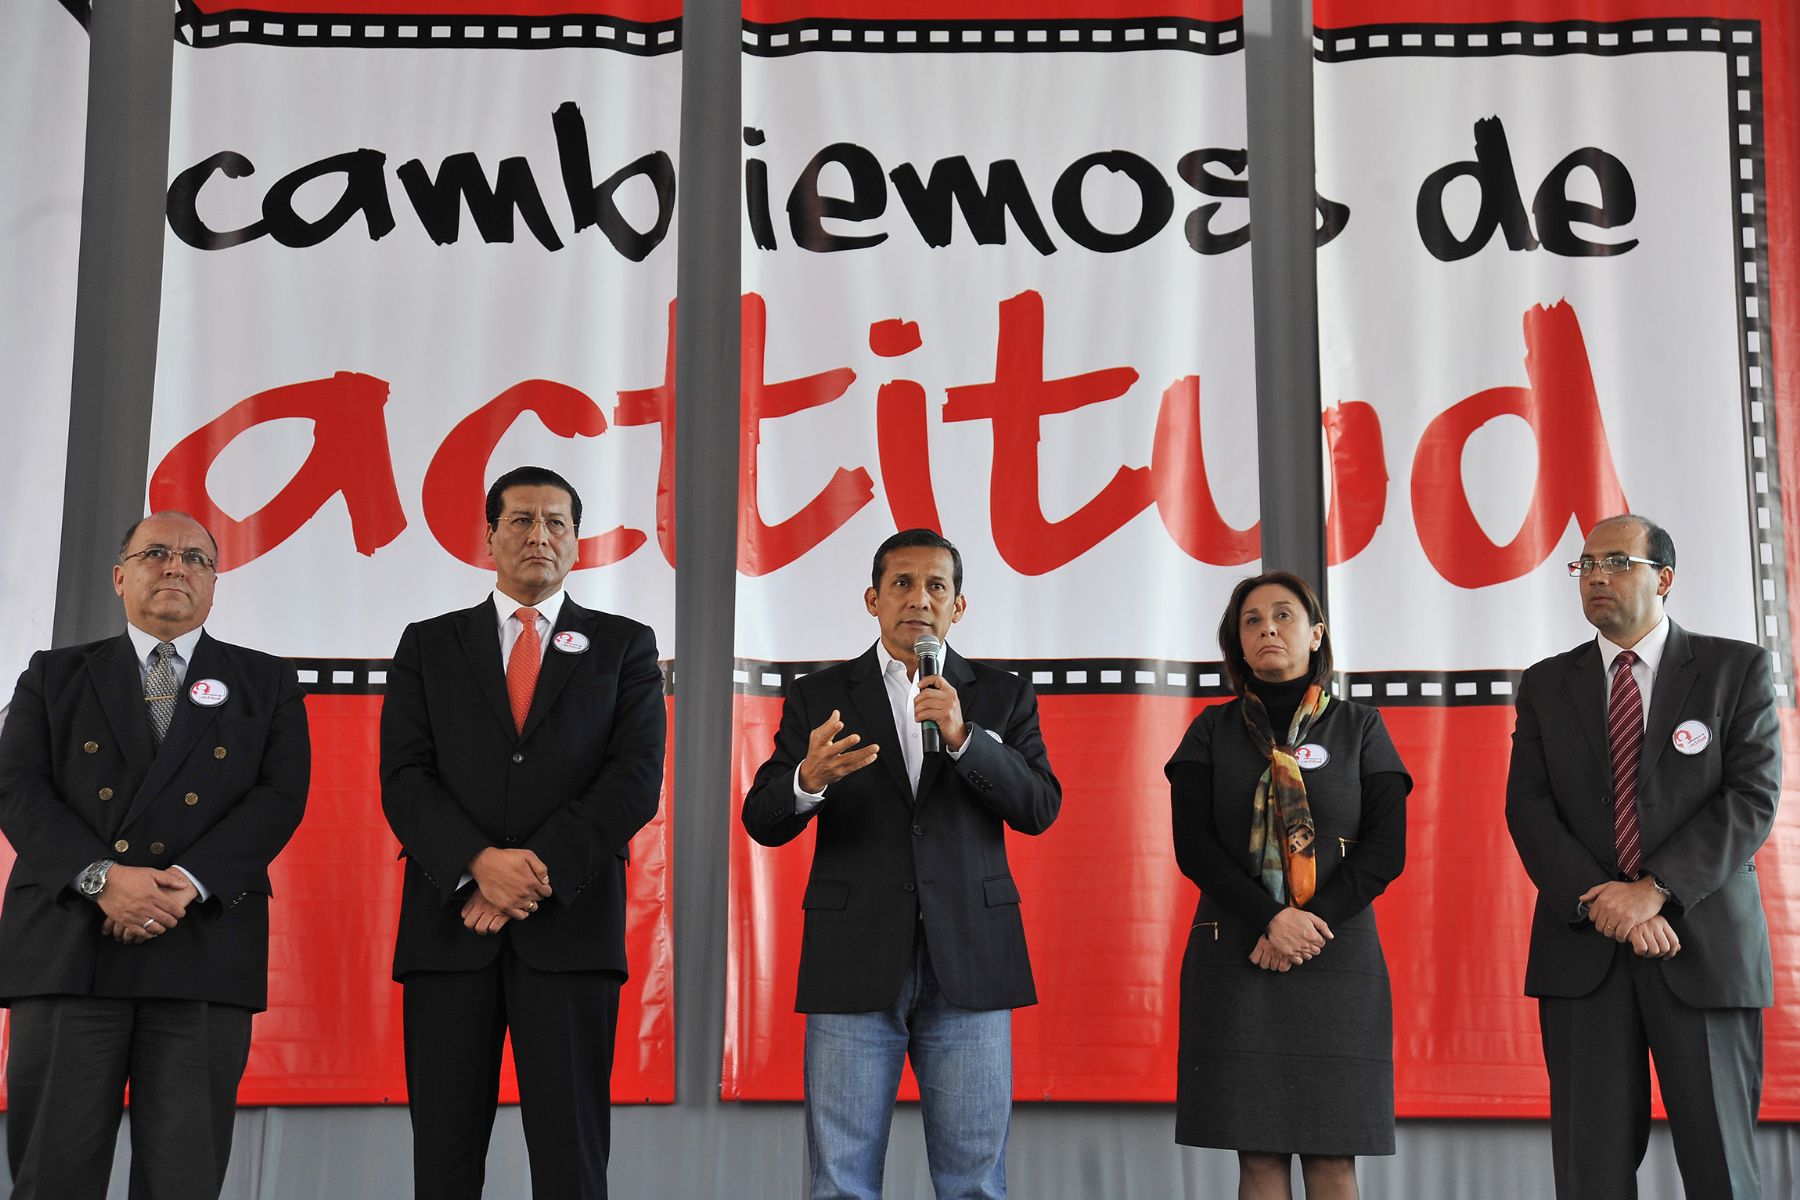 La campaña multisectorial de educación y seguridad vial Cambiemos de Actitud 2013 fue lanzada esta mañana por el Presidente de la República, Ollanta Humala Tasso. Foto: ANDINA/Prensa Presidencia.